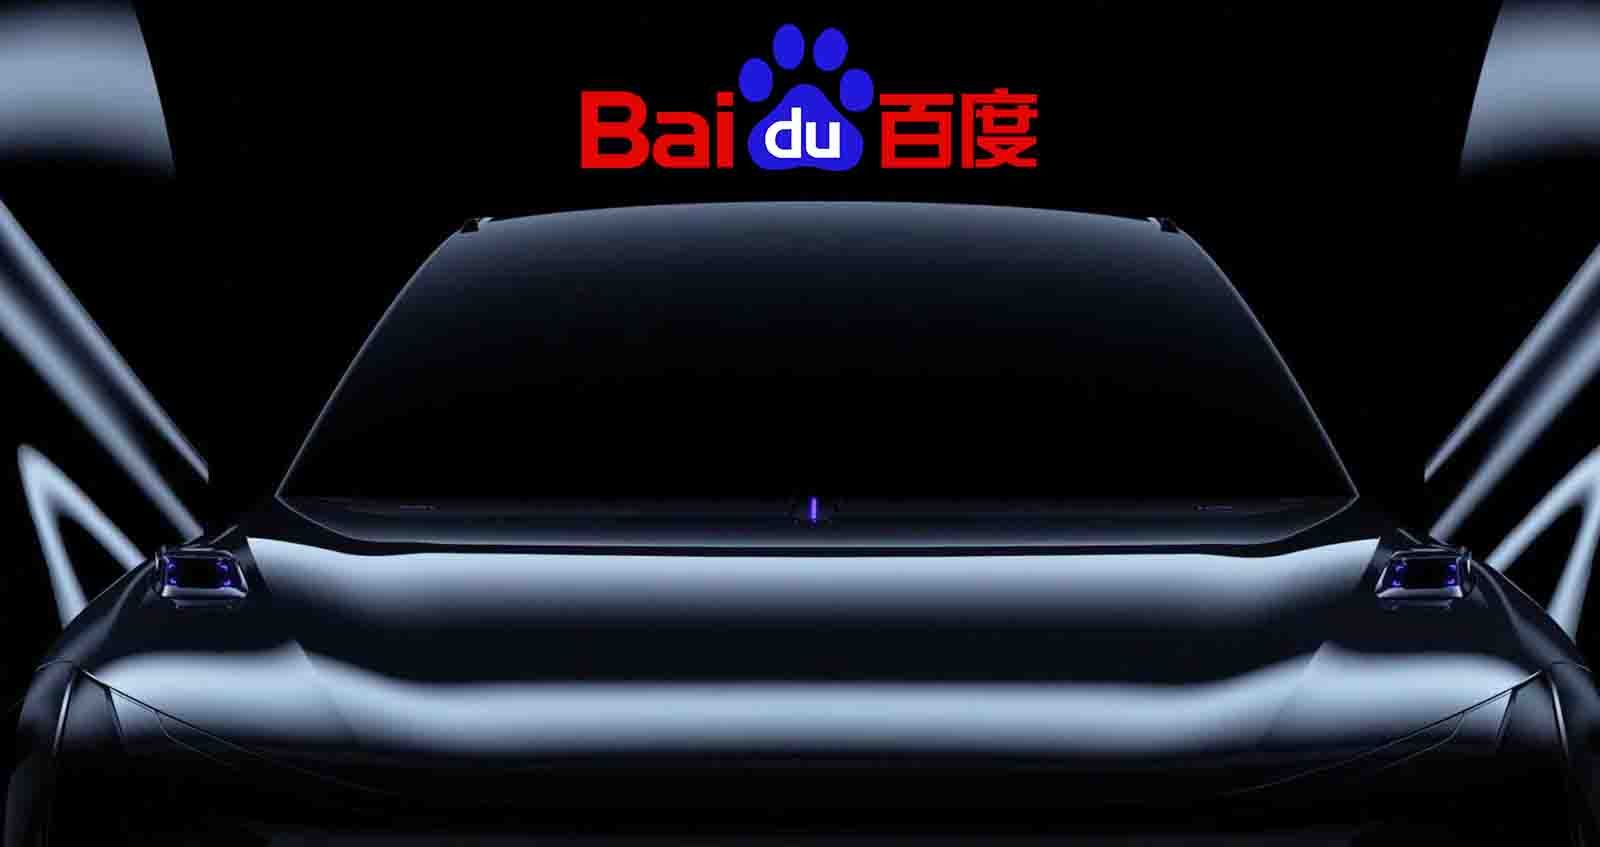 Baidu ปล่อยทีเซอร์ รถยนต์ไฟฟ้าอัจฉริยะ ภายใต้แบรนด์ JiDU